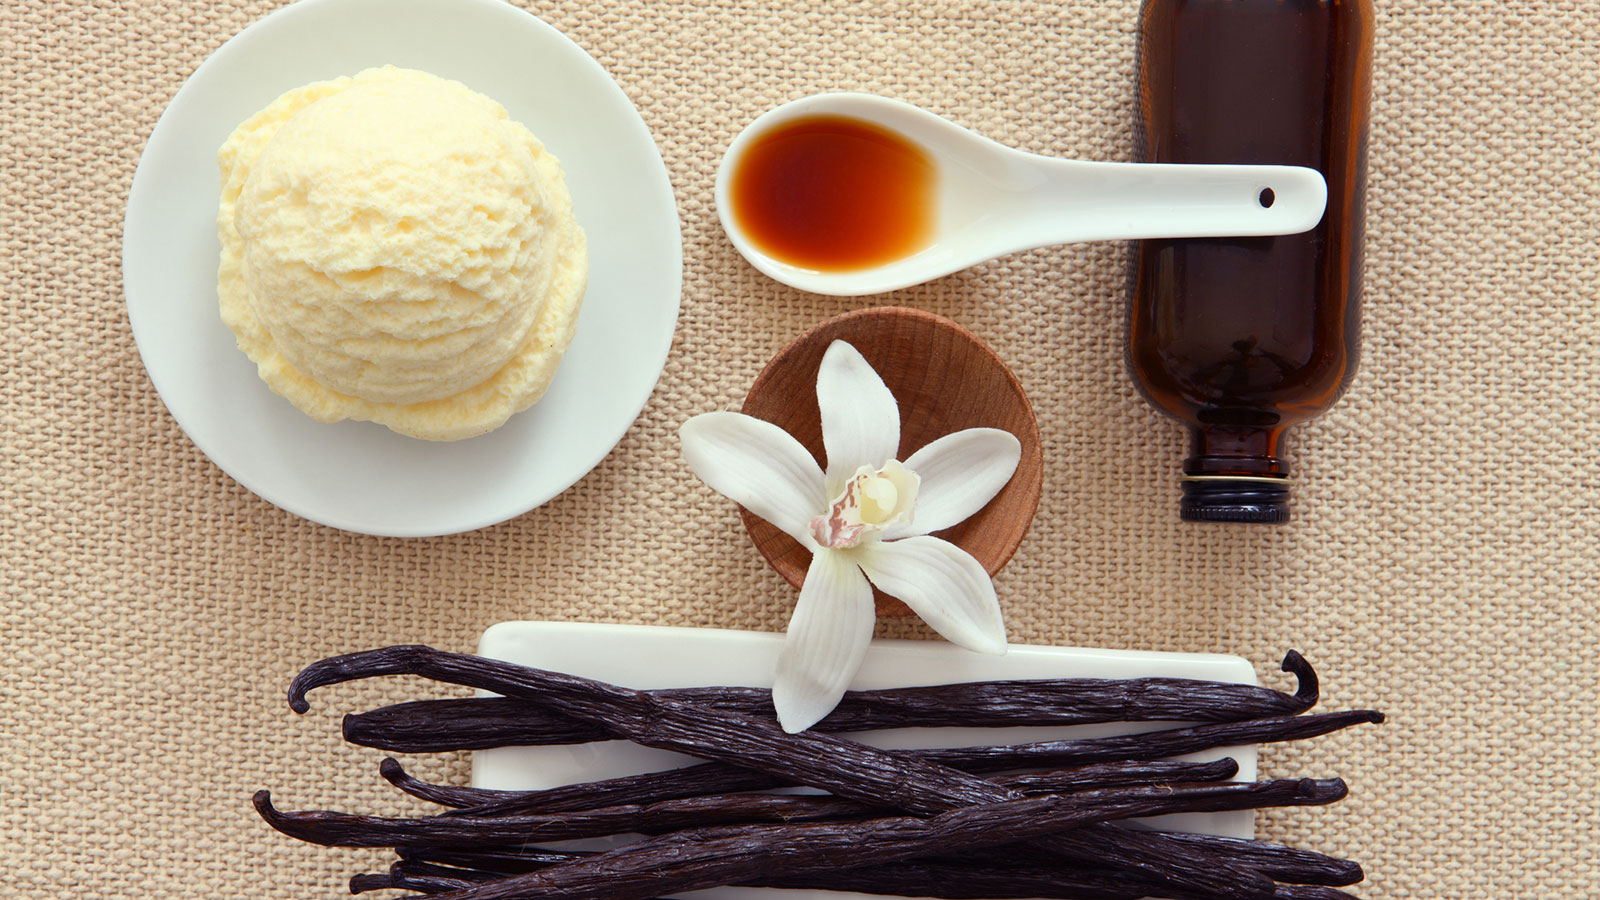 Are You Eating Real Vanilla? Beware of Imitation Vanilla!